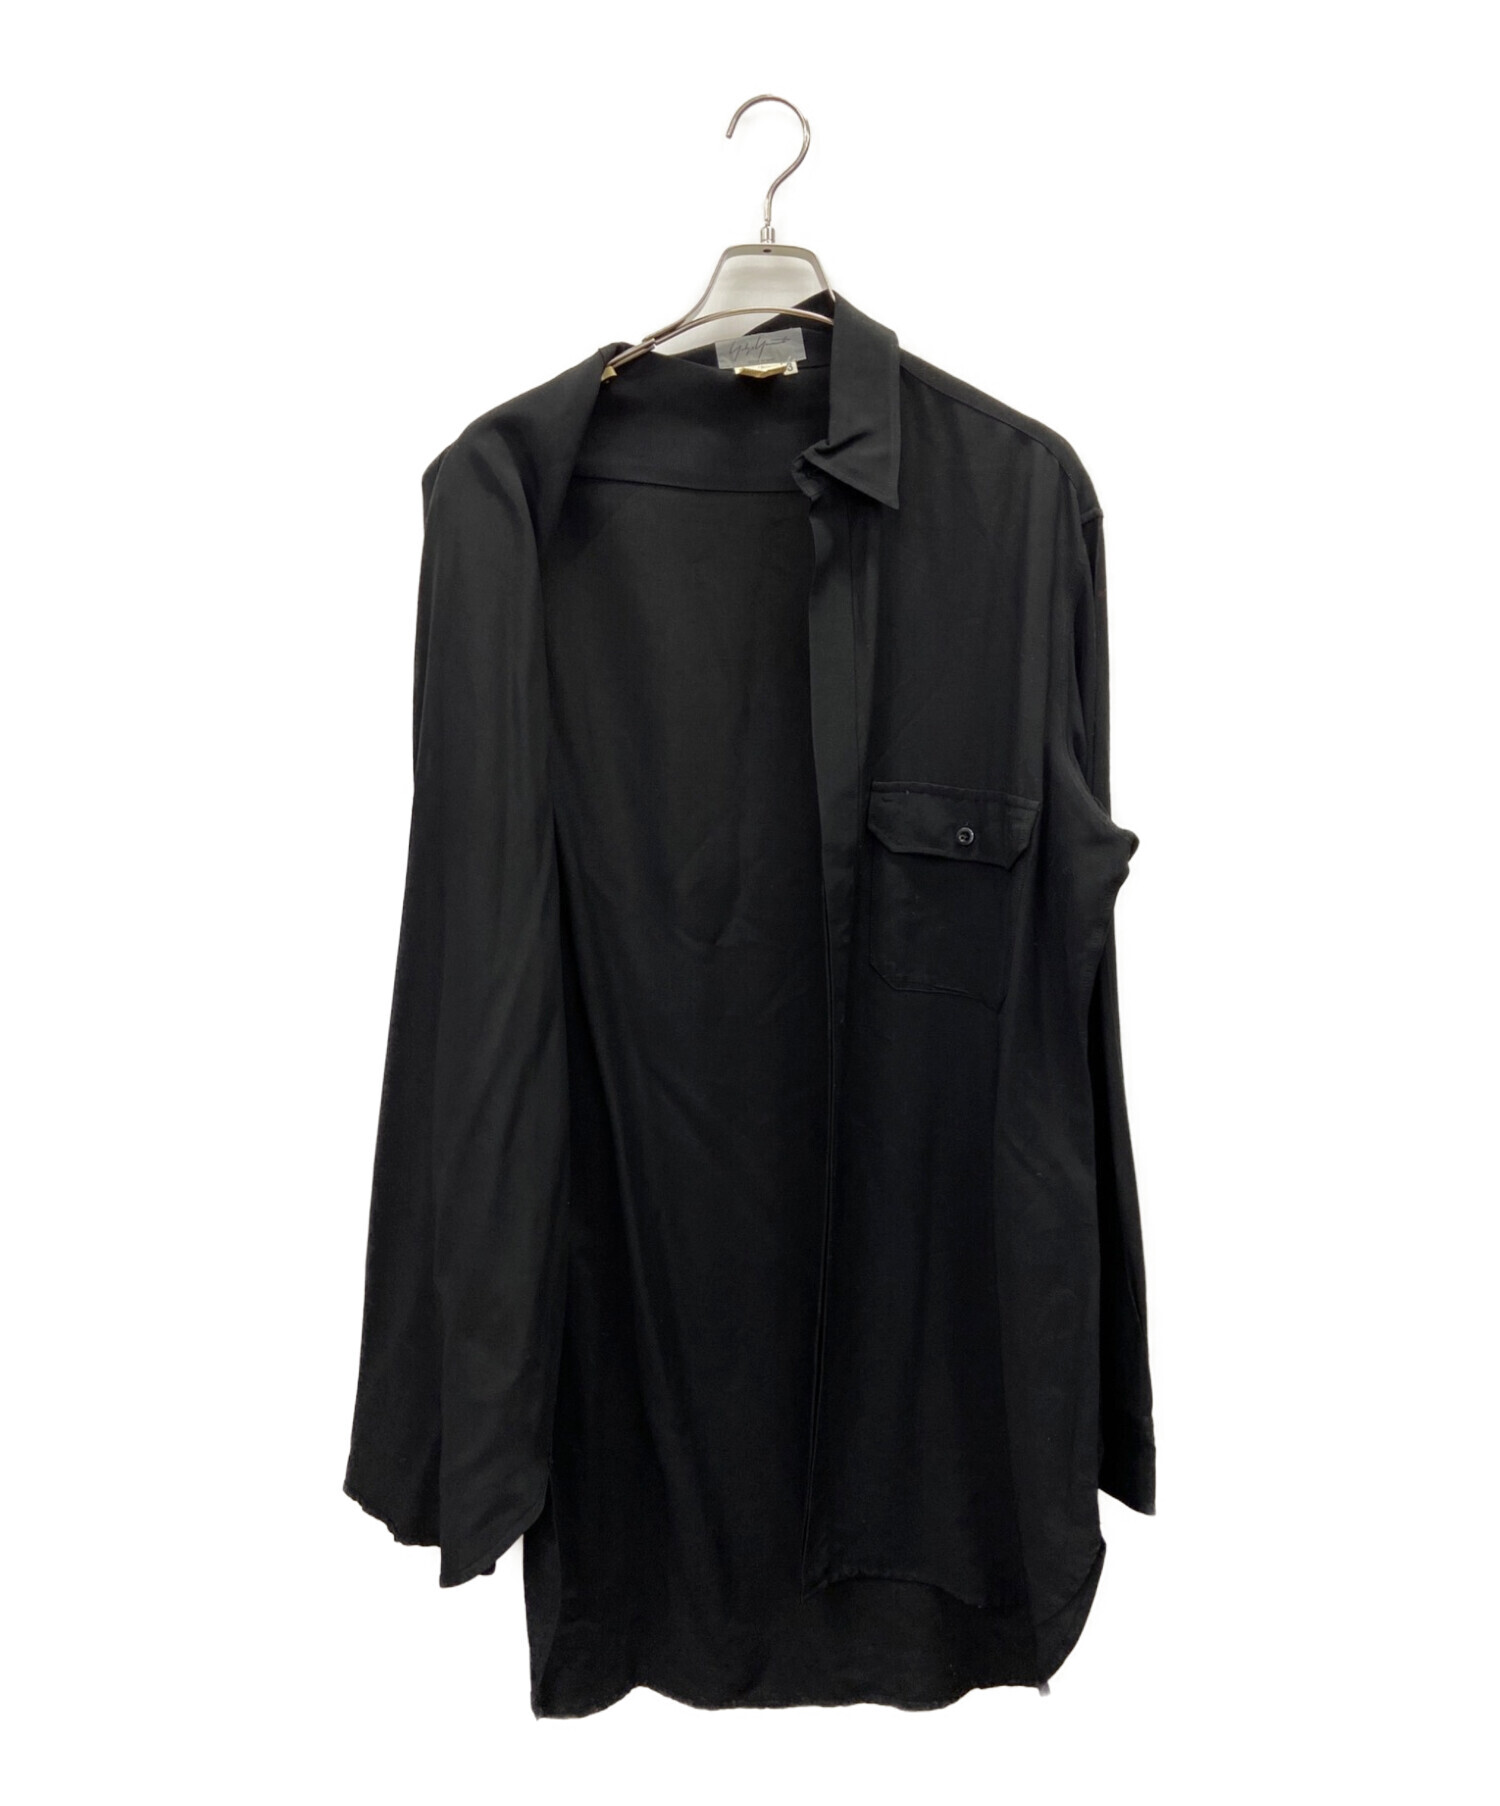 Yohji Yamamoto pour homme (ヨウジヤマモト プールオム) オーバーサイズシャツ ブラック サイズ:3